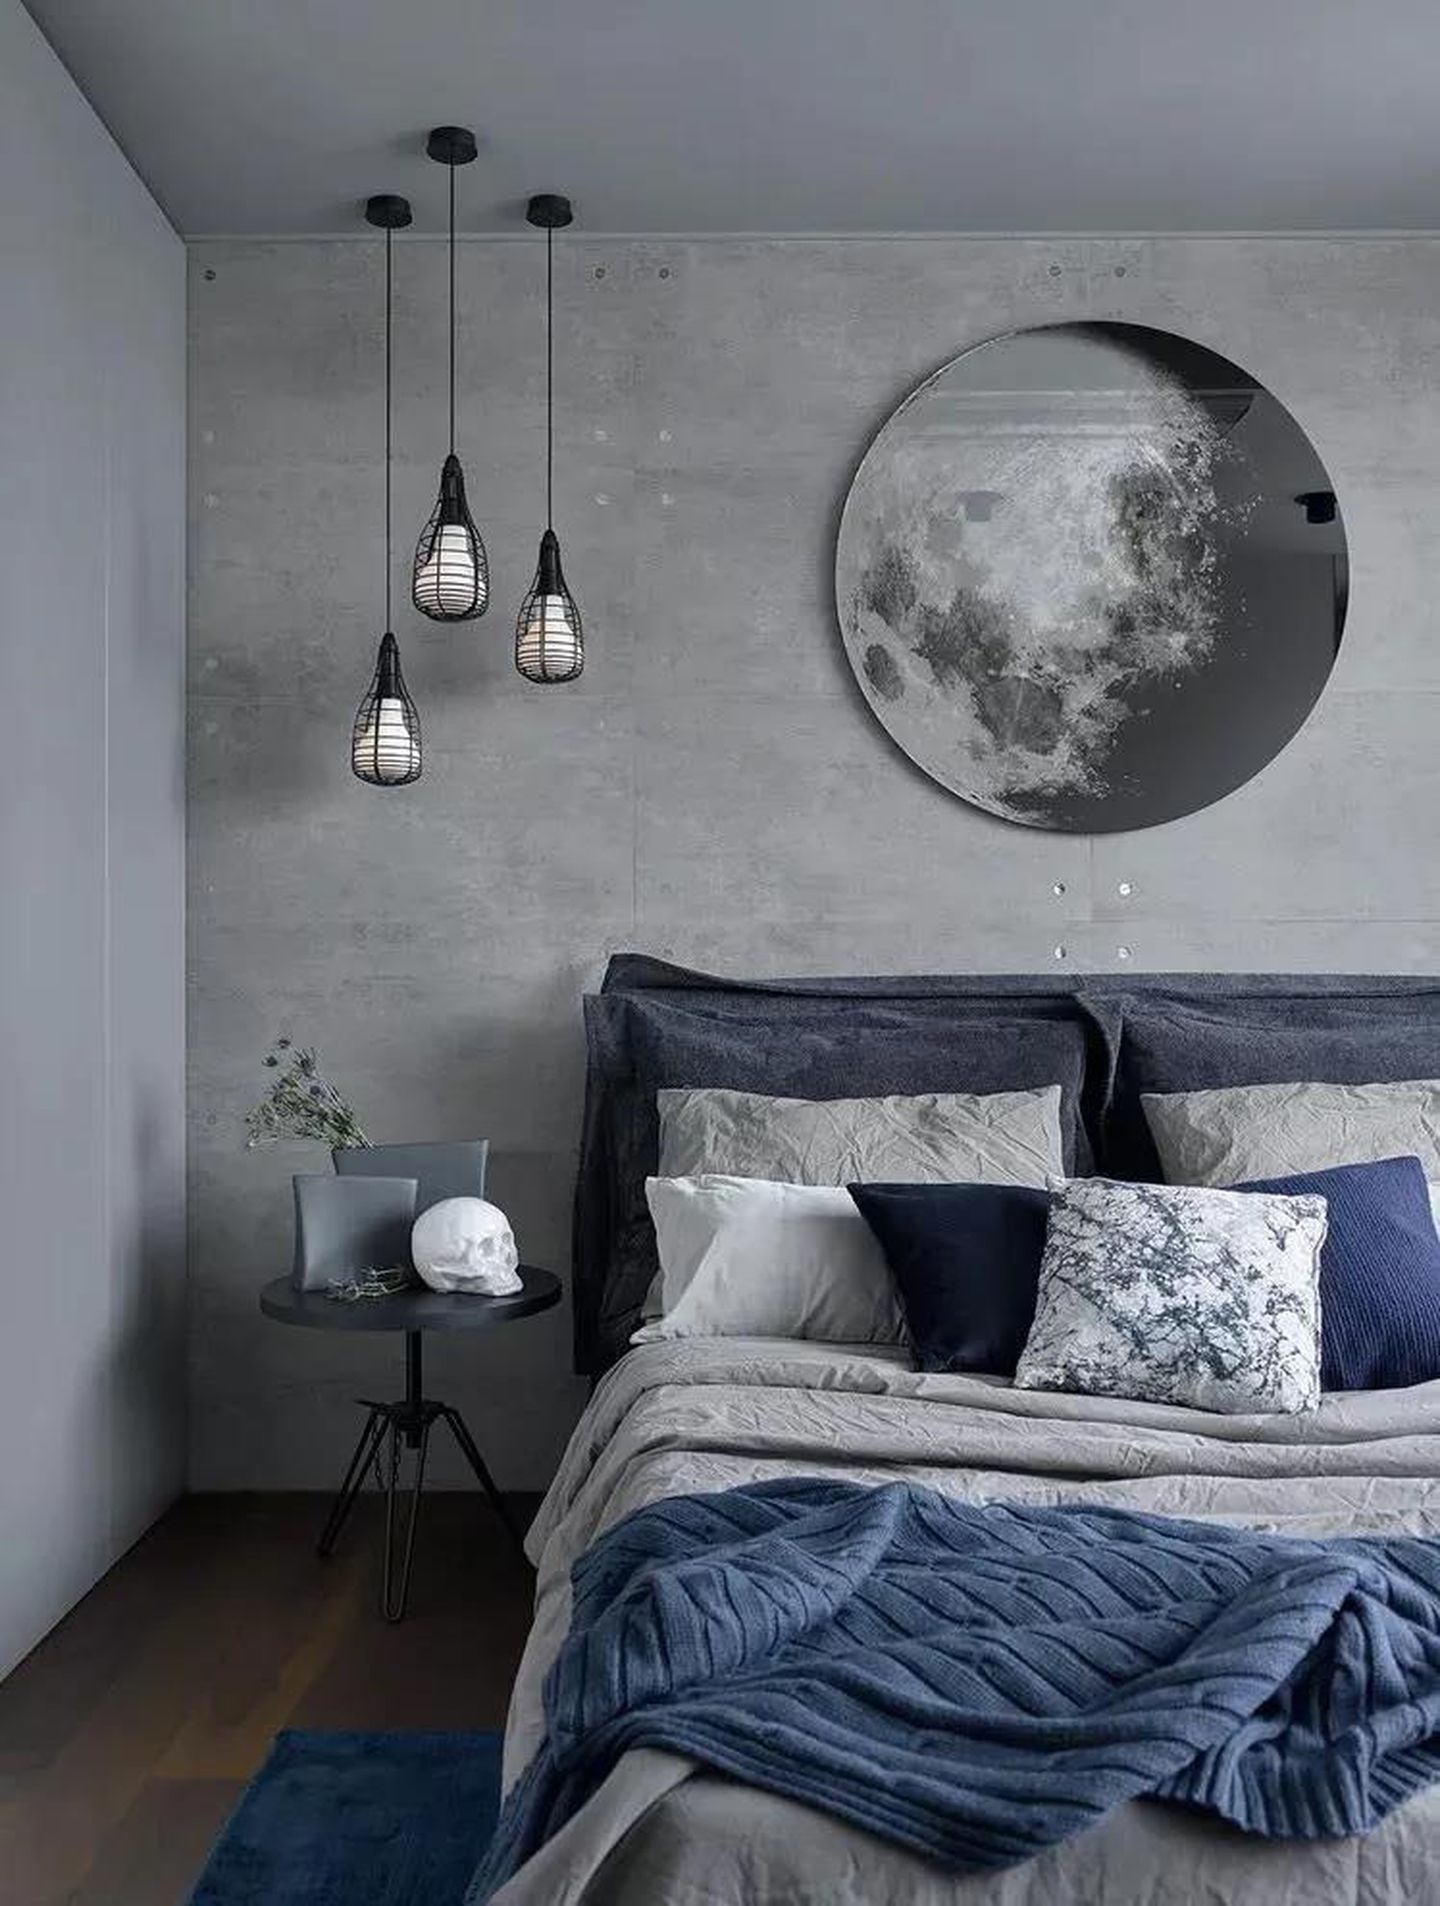 Sơn tường màu xám đậm kết hợp phụ kiện màu xanh lam thể hiện vẻ nam tính cho phòng ngủ.